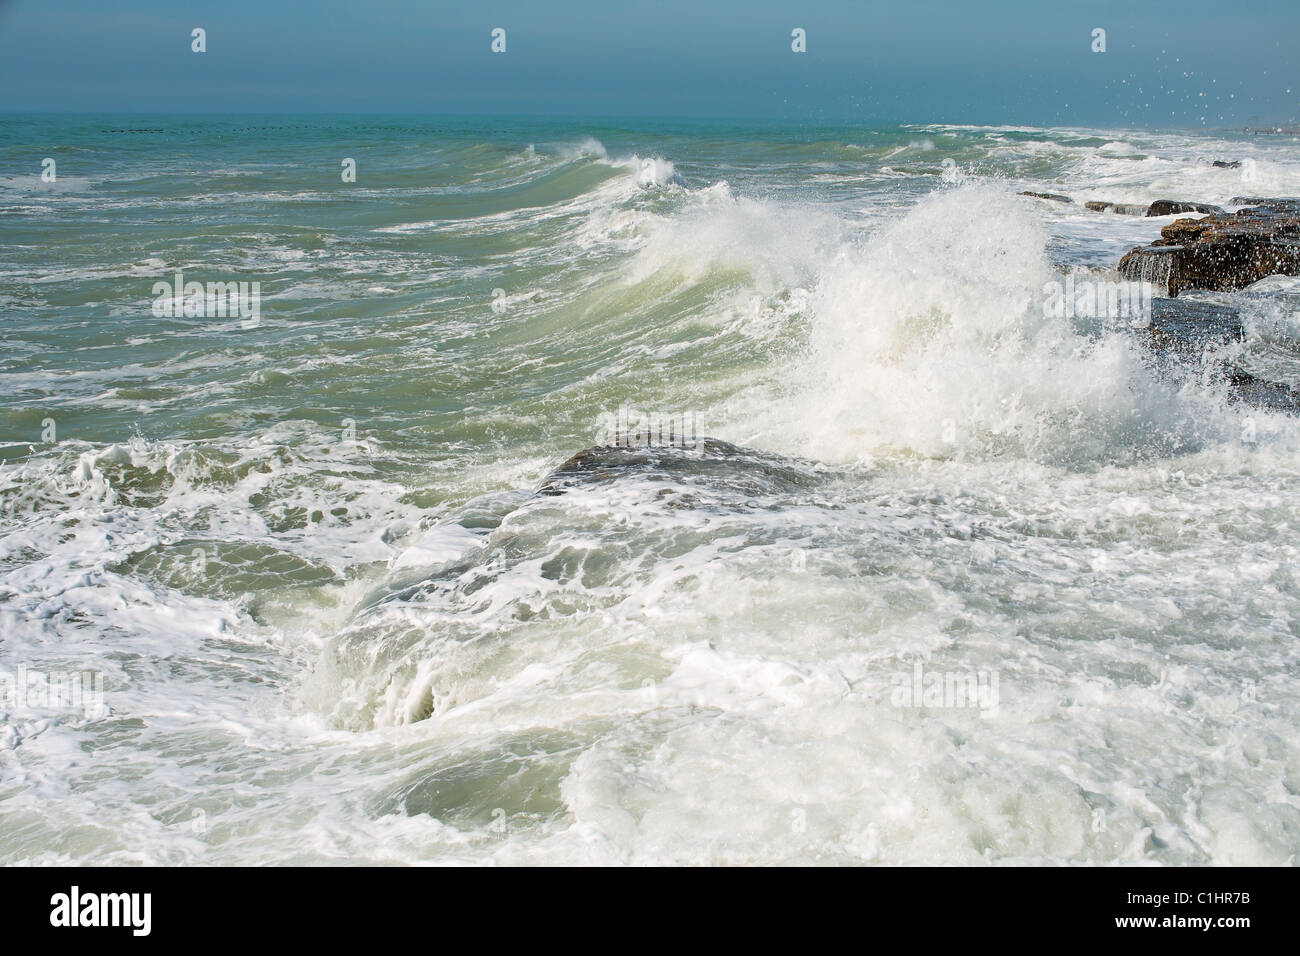 Sturm an der Küste des Kaspischen Meeres. Monat Februar. Stockfoto